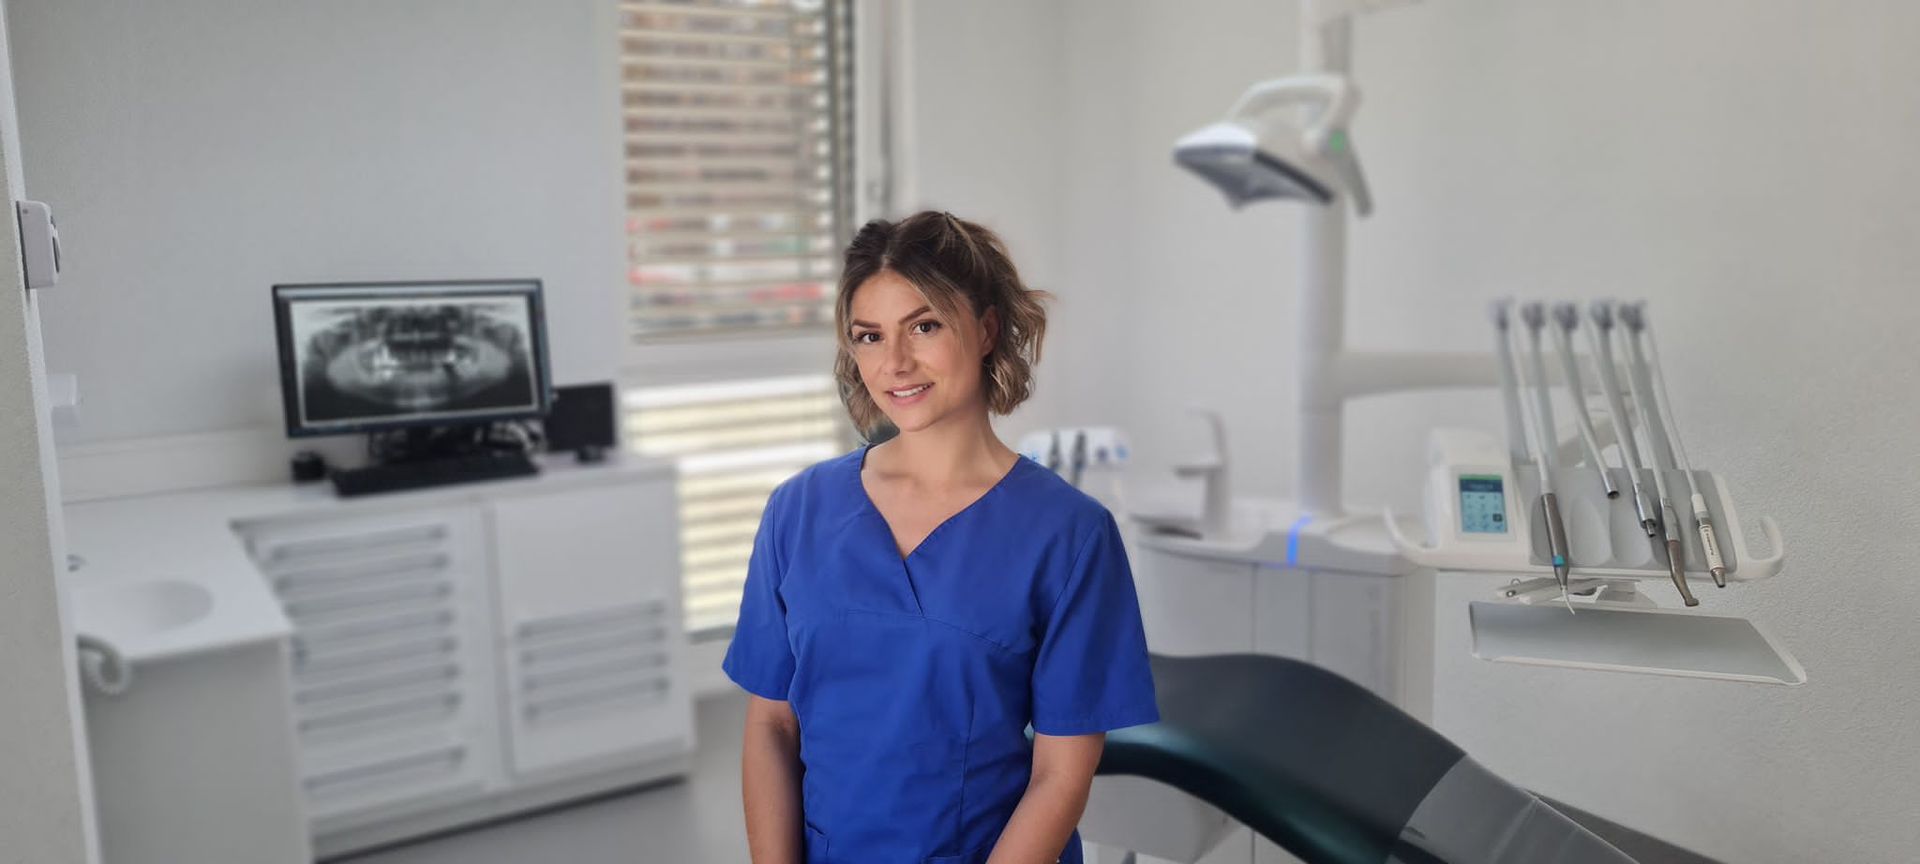 Nathalie VUAGNIAUX - Cabinet Dentaire Sagez Sàrl